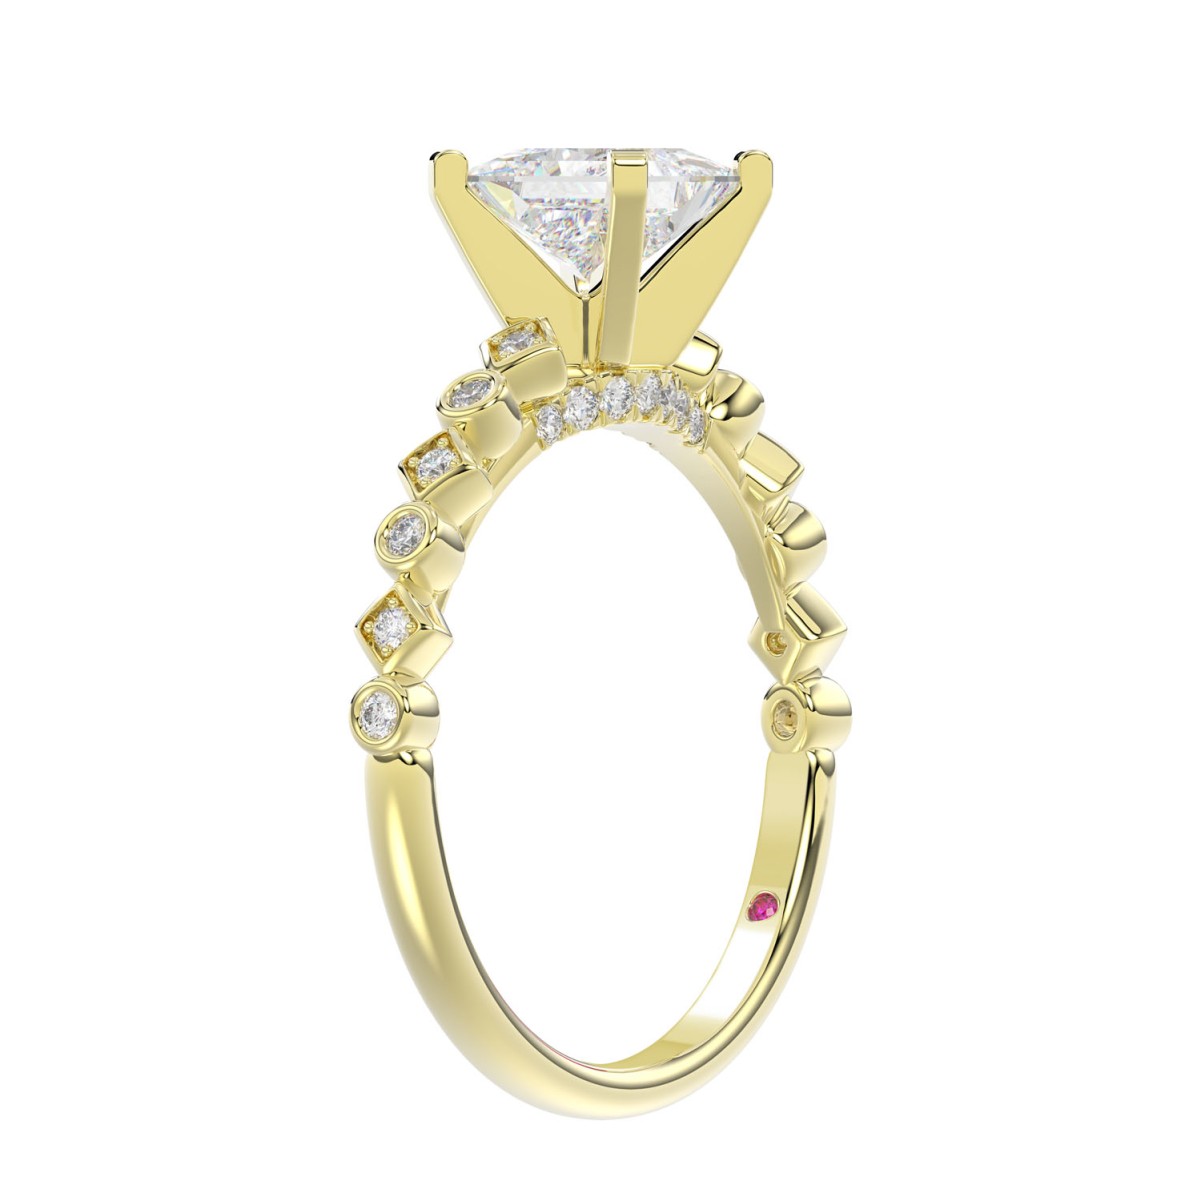 14K YELLOW GOLD 1/6CT ROUND/PRINCESS DIAMOND LADIES RING(CENTER STONE MOUNT PRINCESS DIAMOND 1CT)